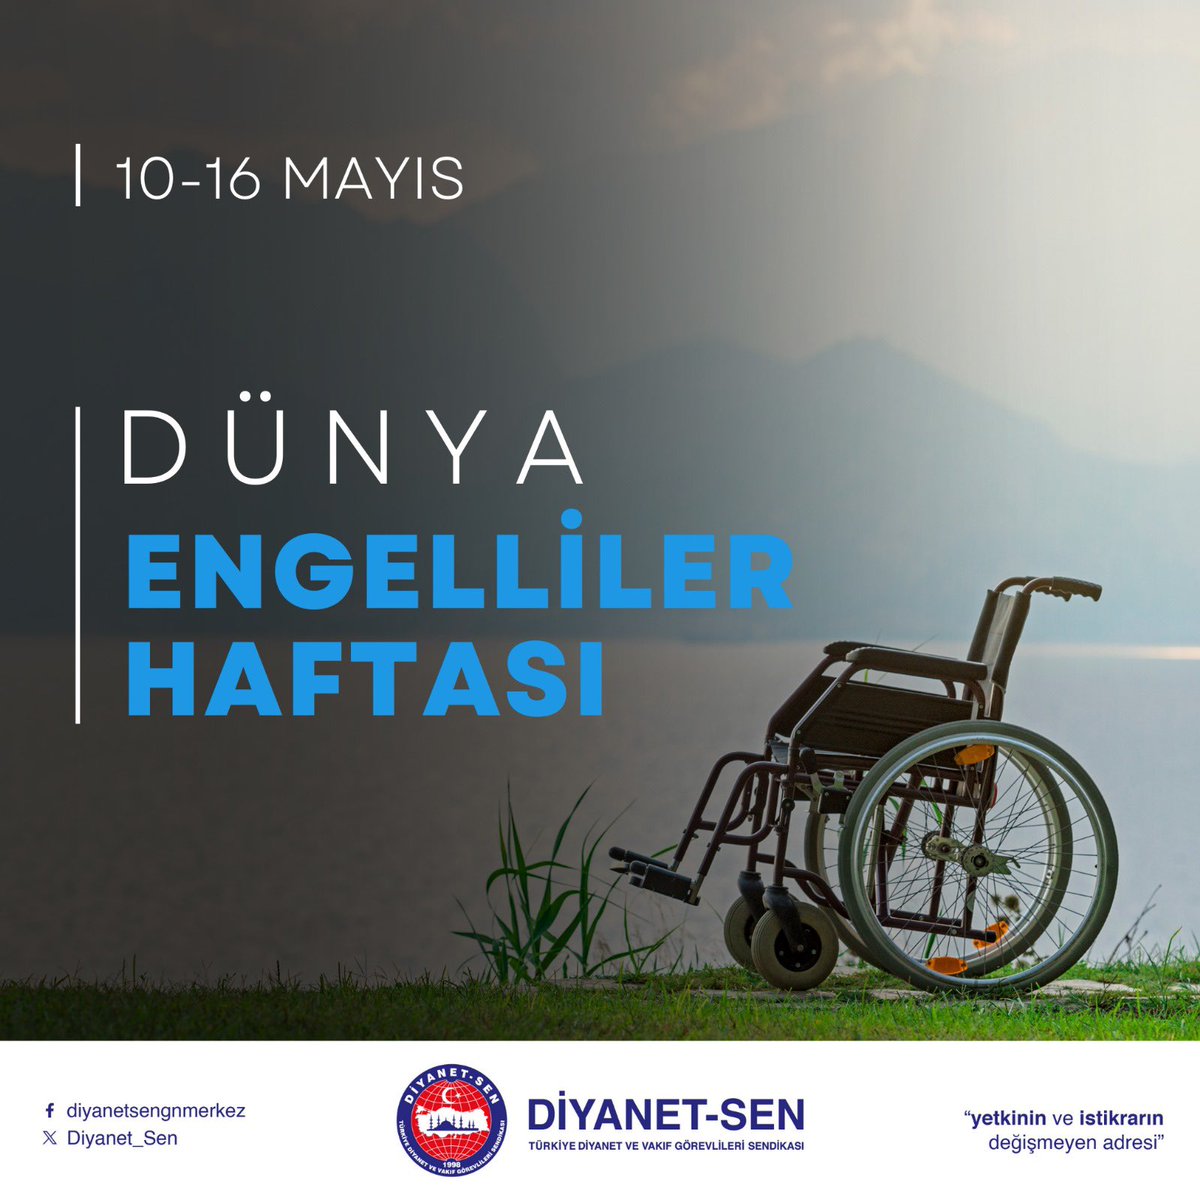 Engelli vatandaşlarımızın sosyal hayatın her alanında yer almalarını destekliyor, tüm engelli vatandaşlarımıza sağlık ve afiyet diliyoruz. 10-16 Mayıs #EngellilerHaftası